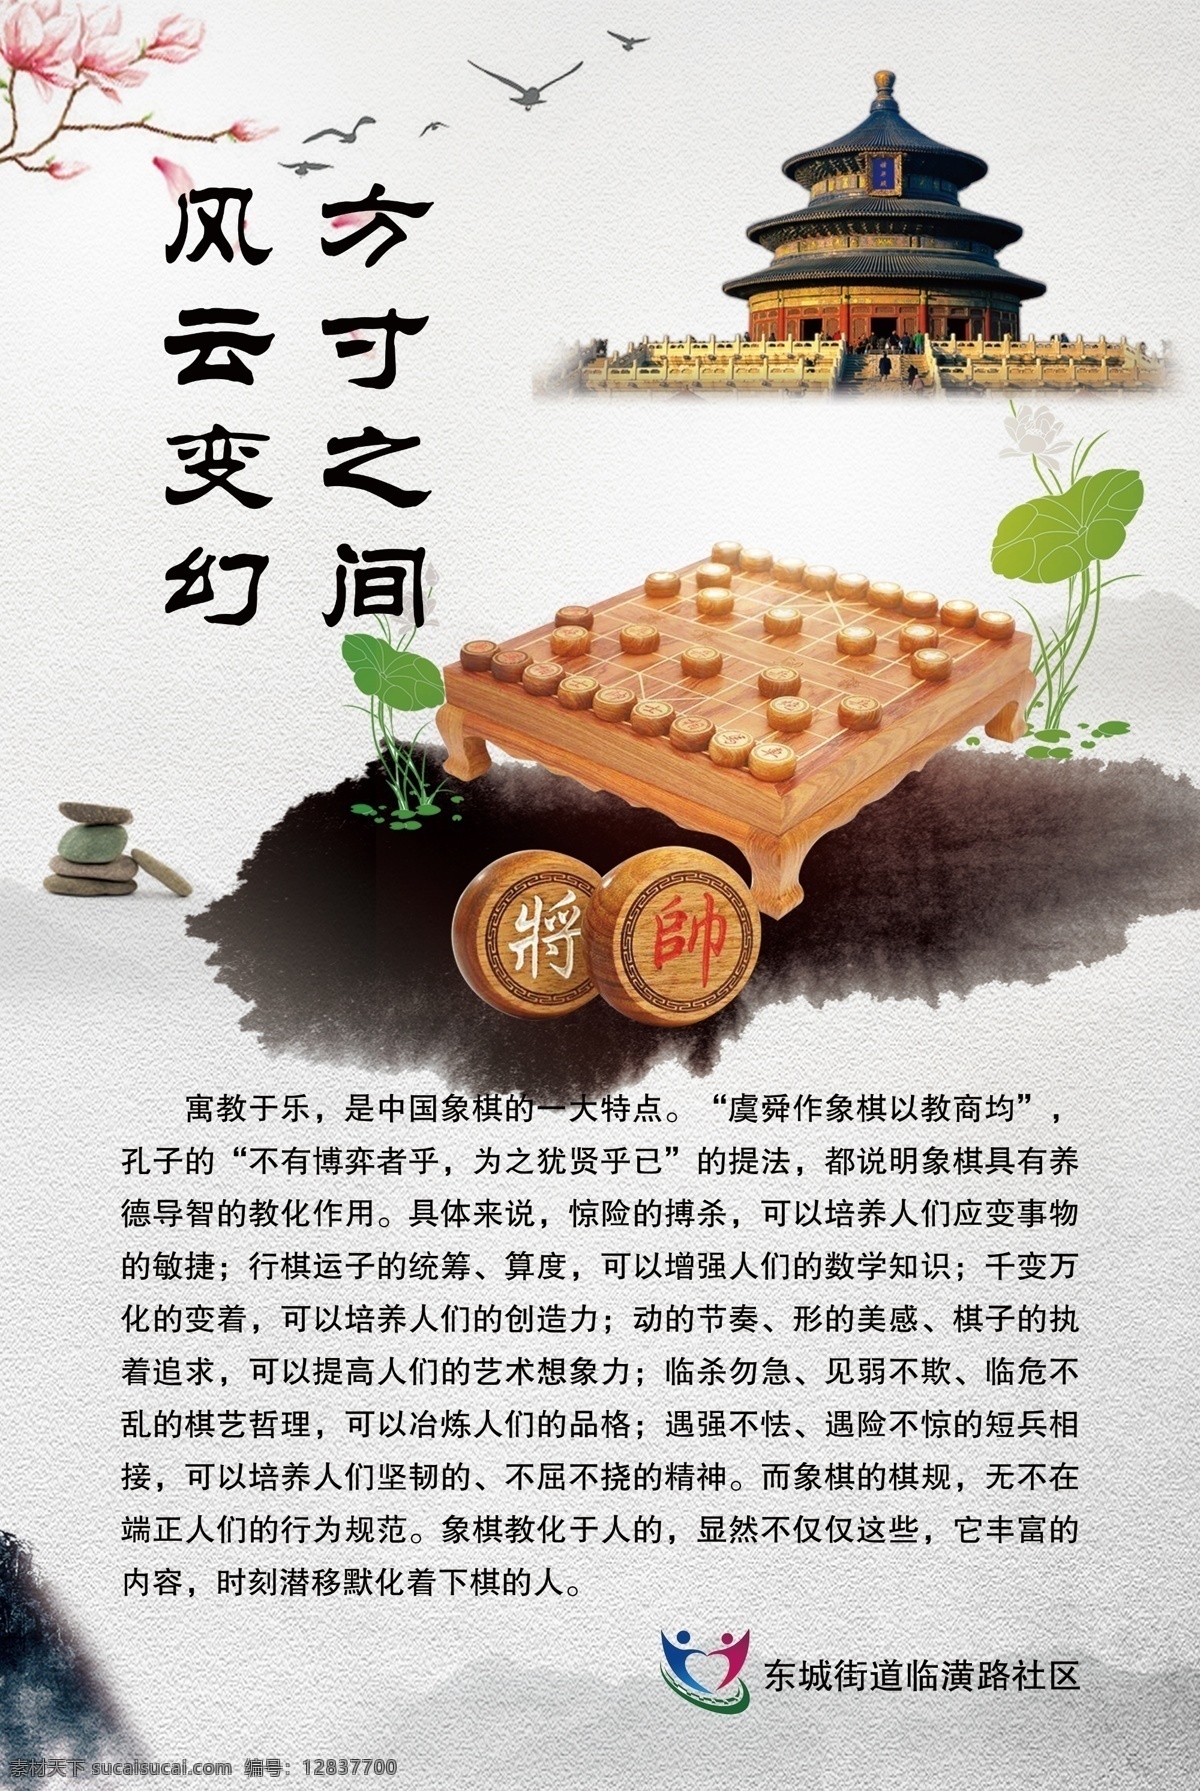 象棋海报 军棋 古雅 中国风 文化 教育 象棋 象棋介绍